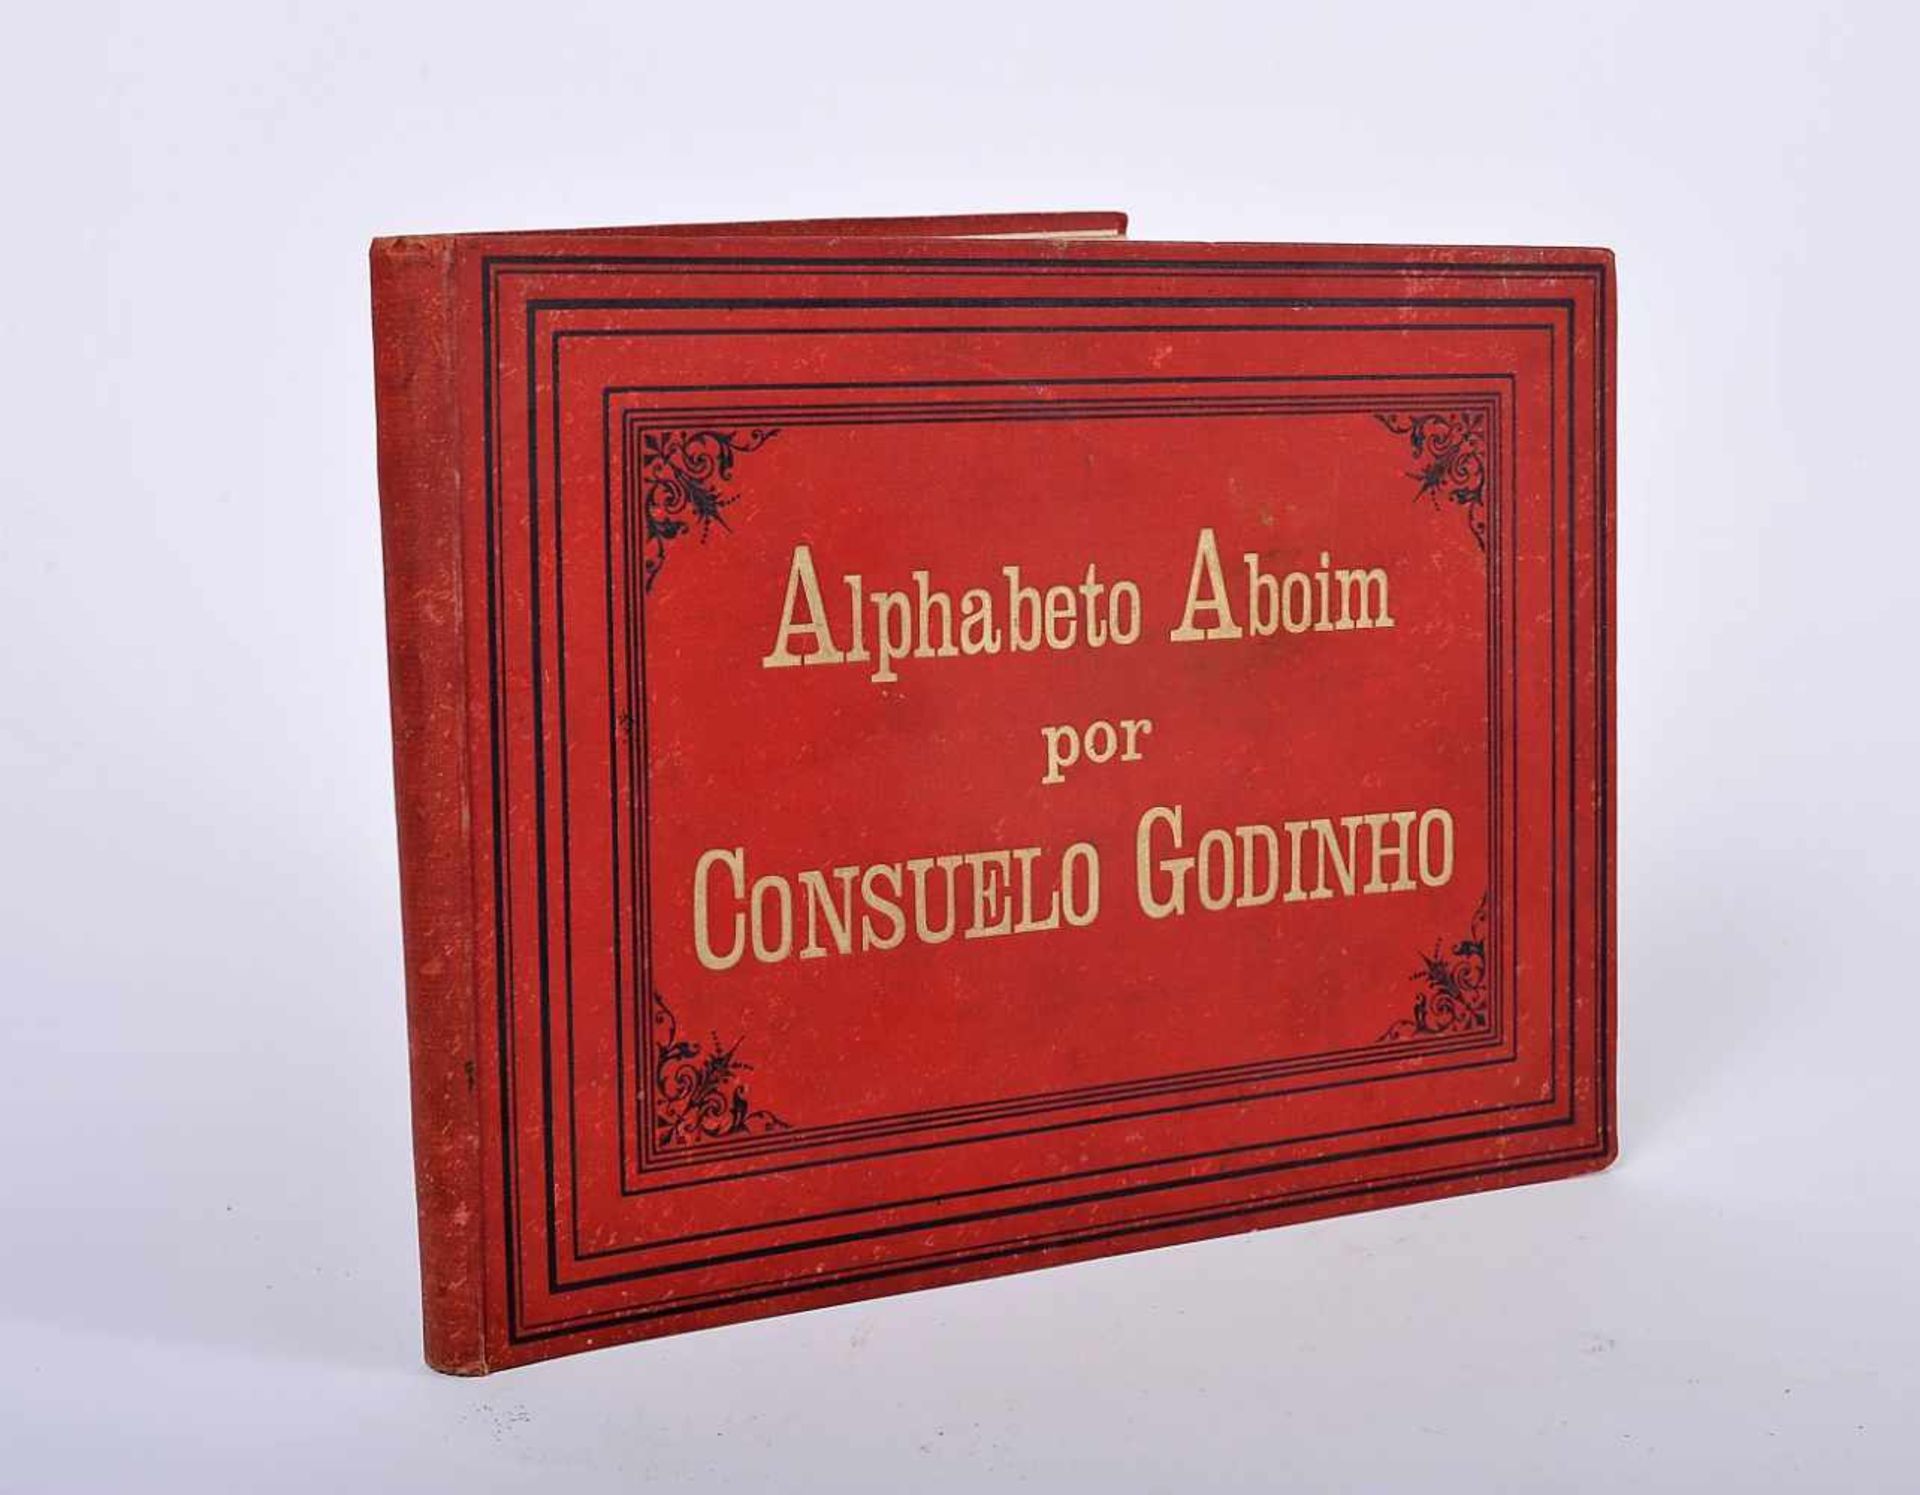 Alphabeto Aboim (Calligraphy)Alphabeto Aboim (Calligraphy), GODINHO, Consuelo Nunes.- Alphabeto